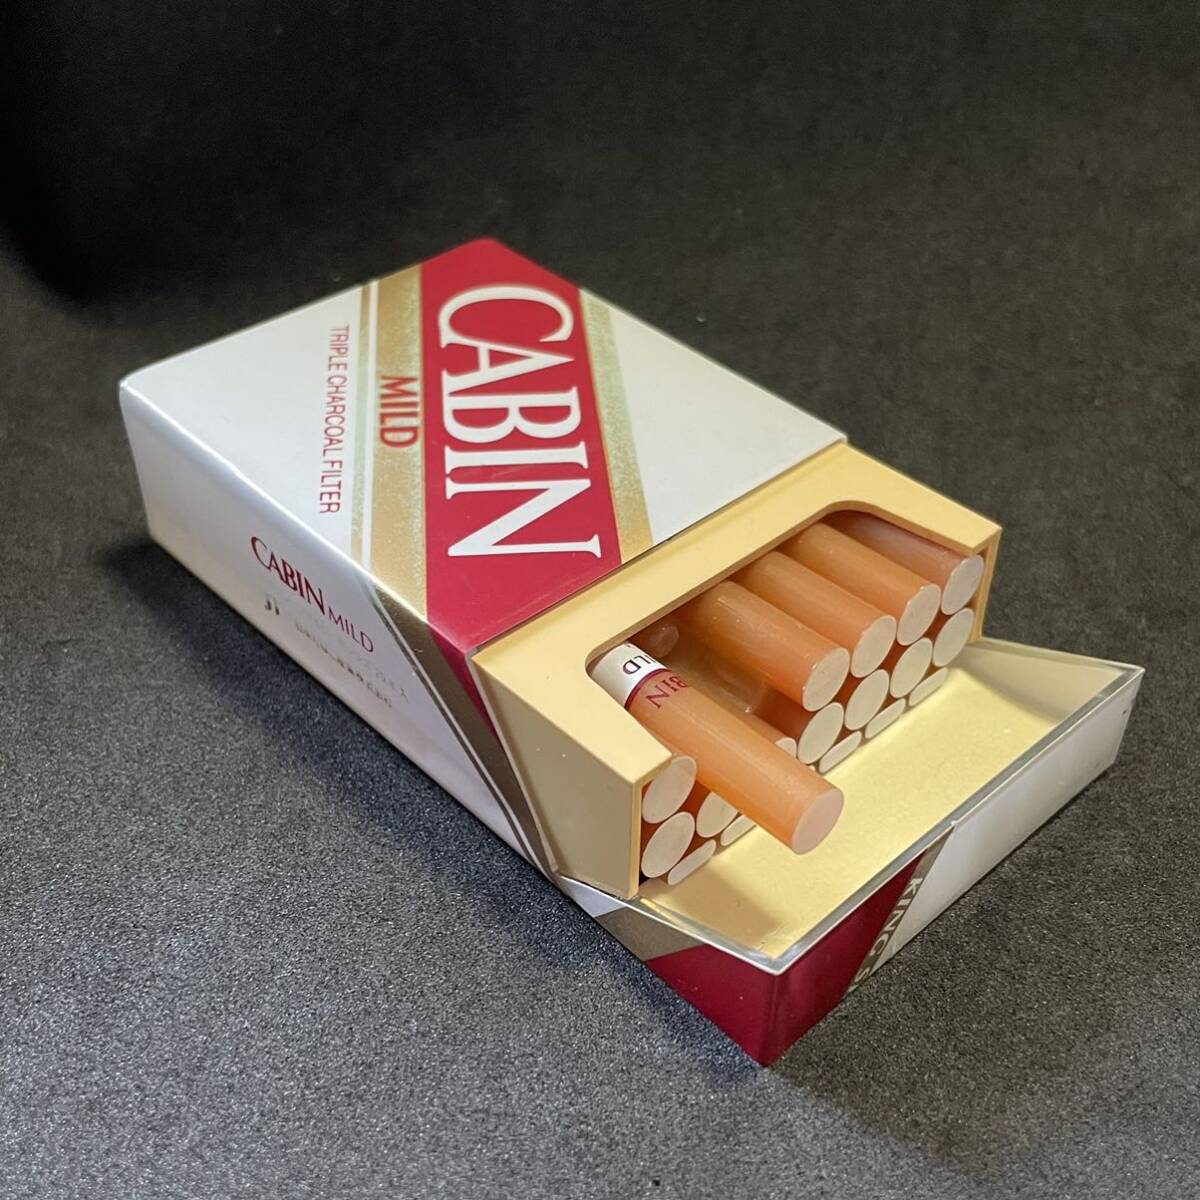 たばこ キャビン CABIN たばこ包装模型 サンプル 見本 ダミー_画像3